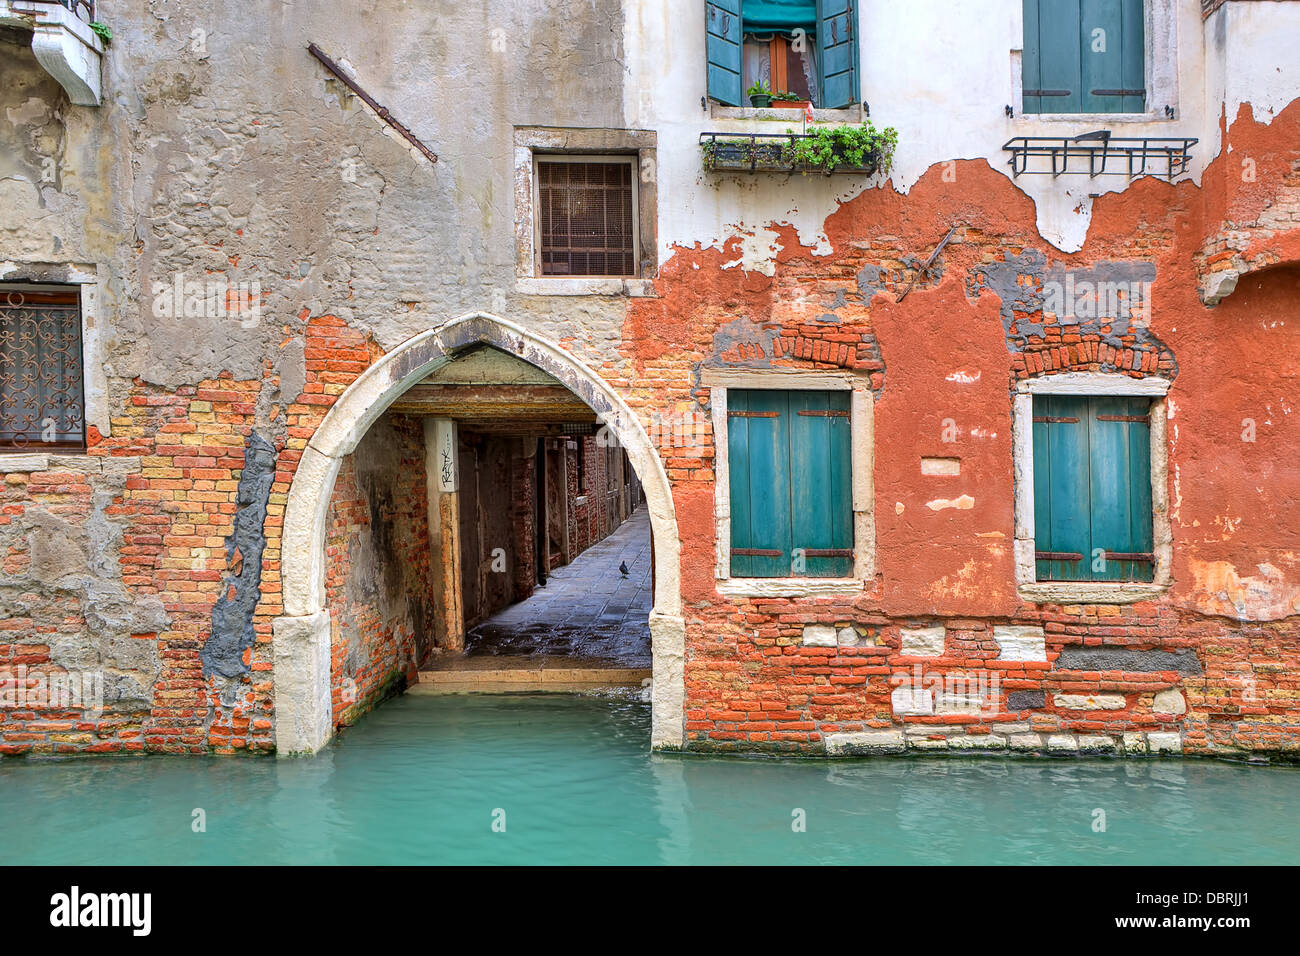 Stretto canale e la facciata della vecchia casa in mattoni rossi con ante chiuse a Venezia, Italia. Foto Stock